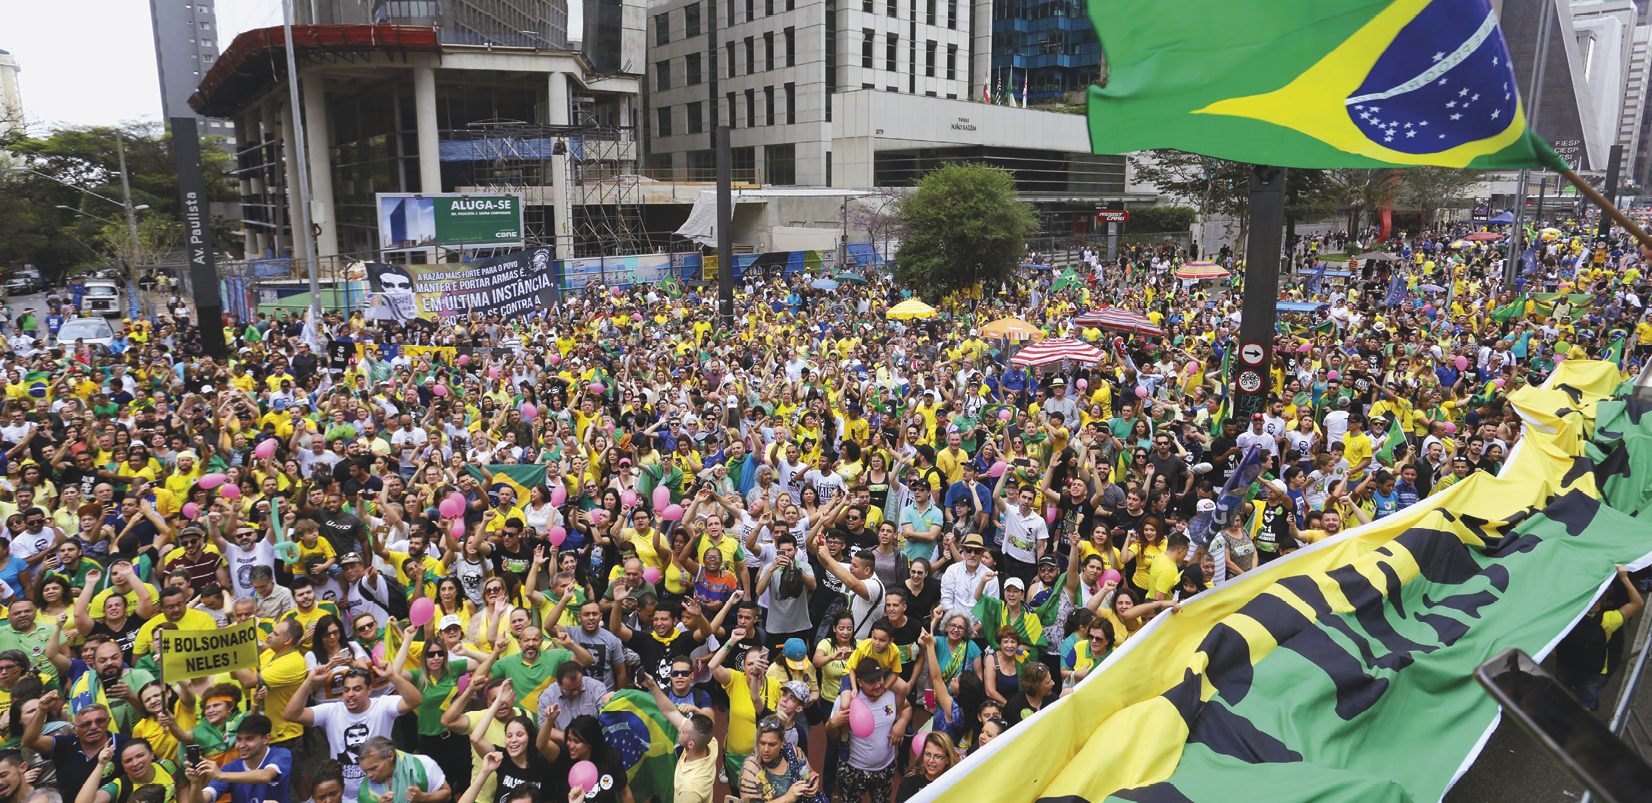 Fotografia. Pessoas vestidas com roupas nas cores verde e amarelo agrupadas em uma avenida em uma manifestação. À direita, uma bandeira do Brasil, abaixo, uma faixa com listras verdes e amarelas e texto ilegível em preto. À esquerda, um prédio em construção.